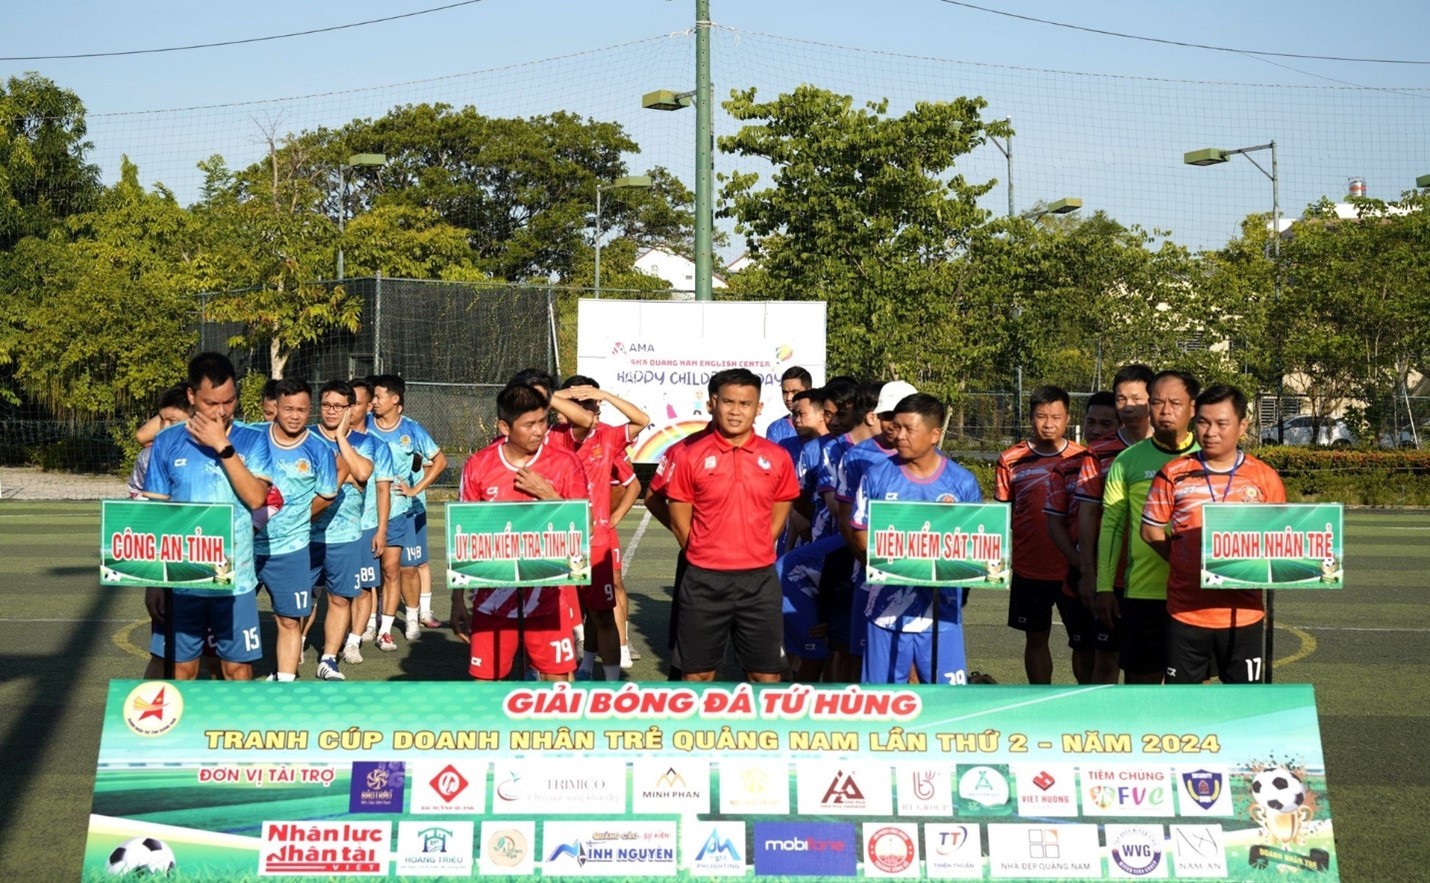 Khai mạc Giải bóng đá tứ hùng tranh cúp doanh nhân trẻ Quảng Nam